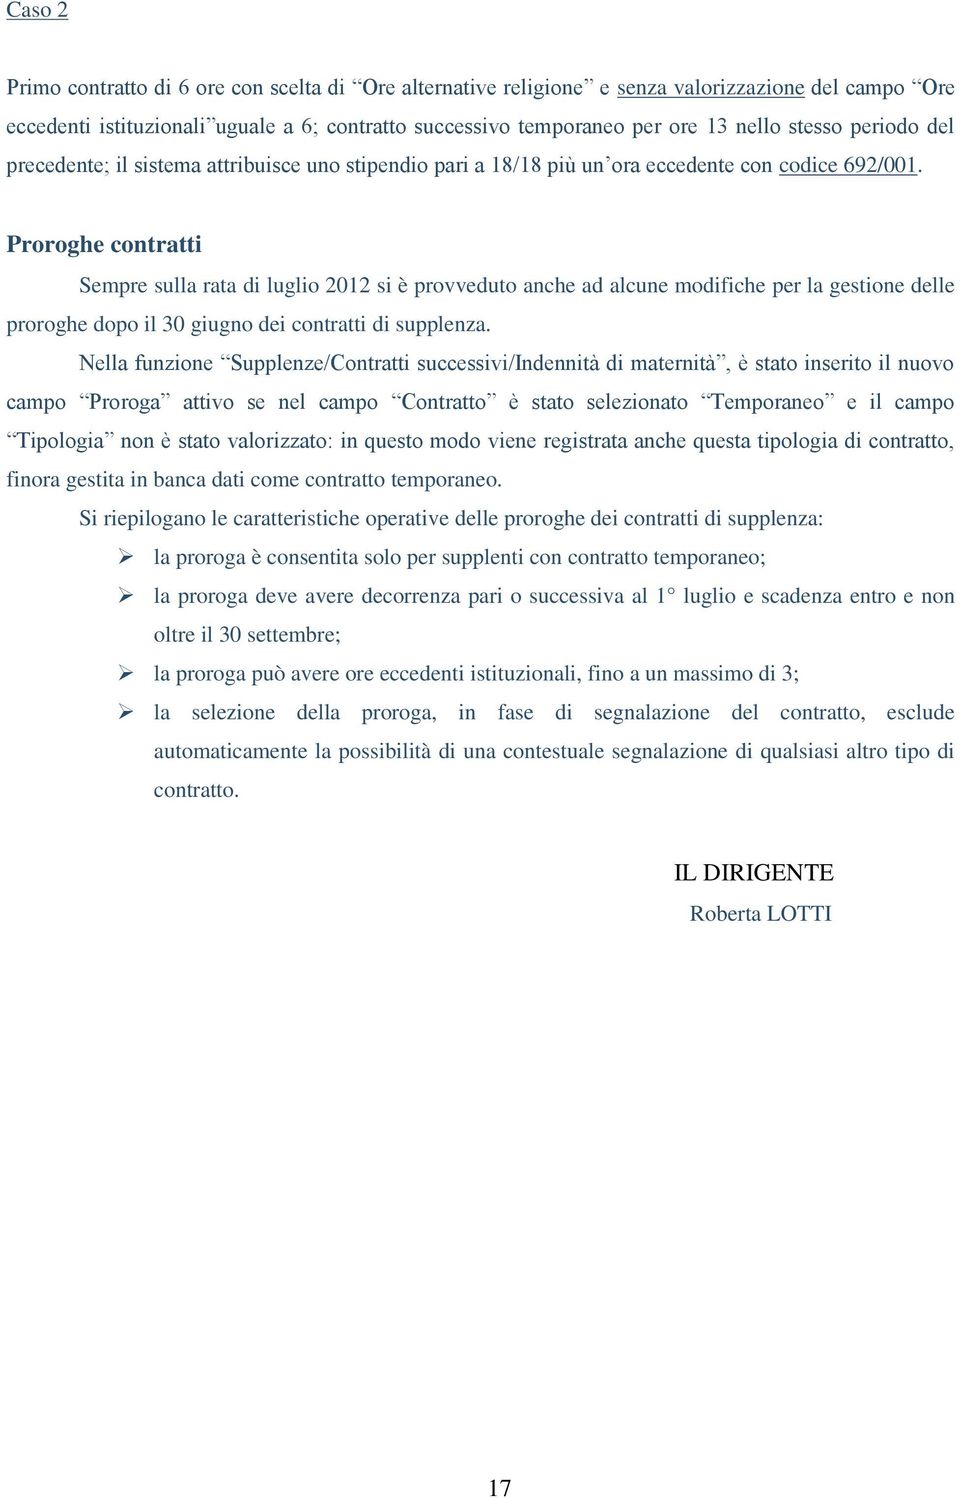 Proroghe contratti Sempre sulla rata di luglio 2012 si è provveduto anche ad alcune modifiche per la gestione delle proroghe dopo il 30 giugno dei contratti di supplenza.